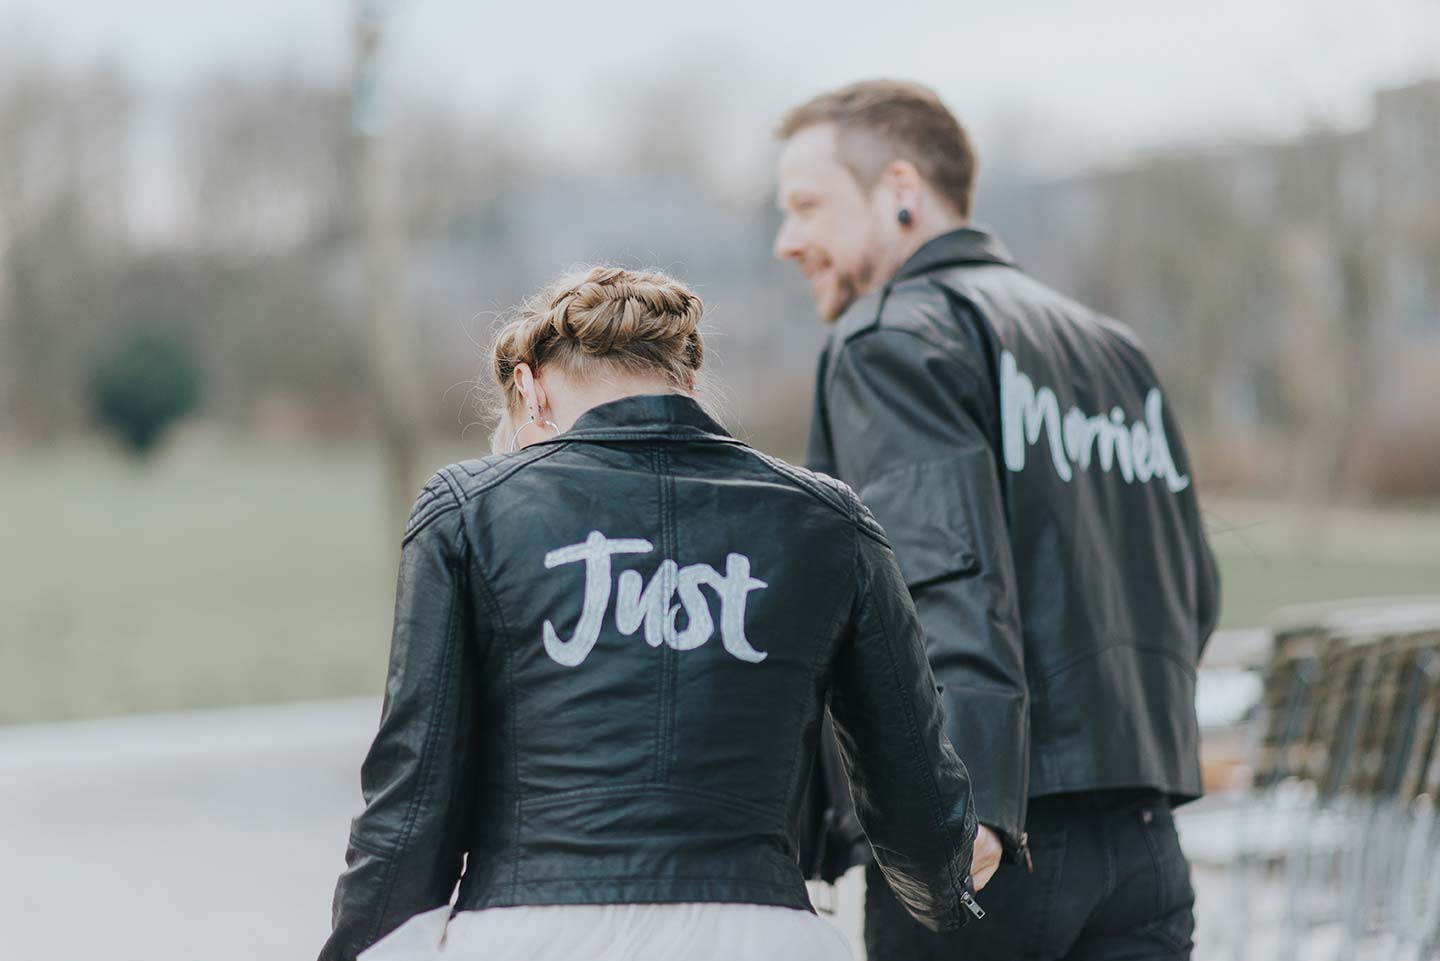 Hochzeitswahn - Ein Paar in passenden schwarzen Lederjacken geht zusammen. Auf ihren Rücken sind die Worte „gerecht“ und „verheiratet“ zu sehen, was den Beginn ihrer Reise als Ehepaar symbolisiert.